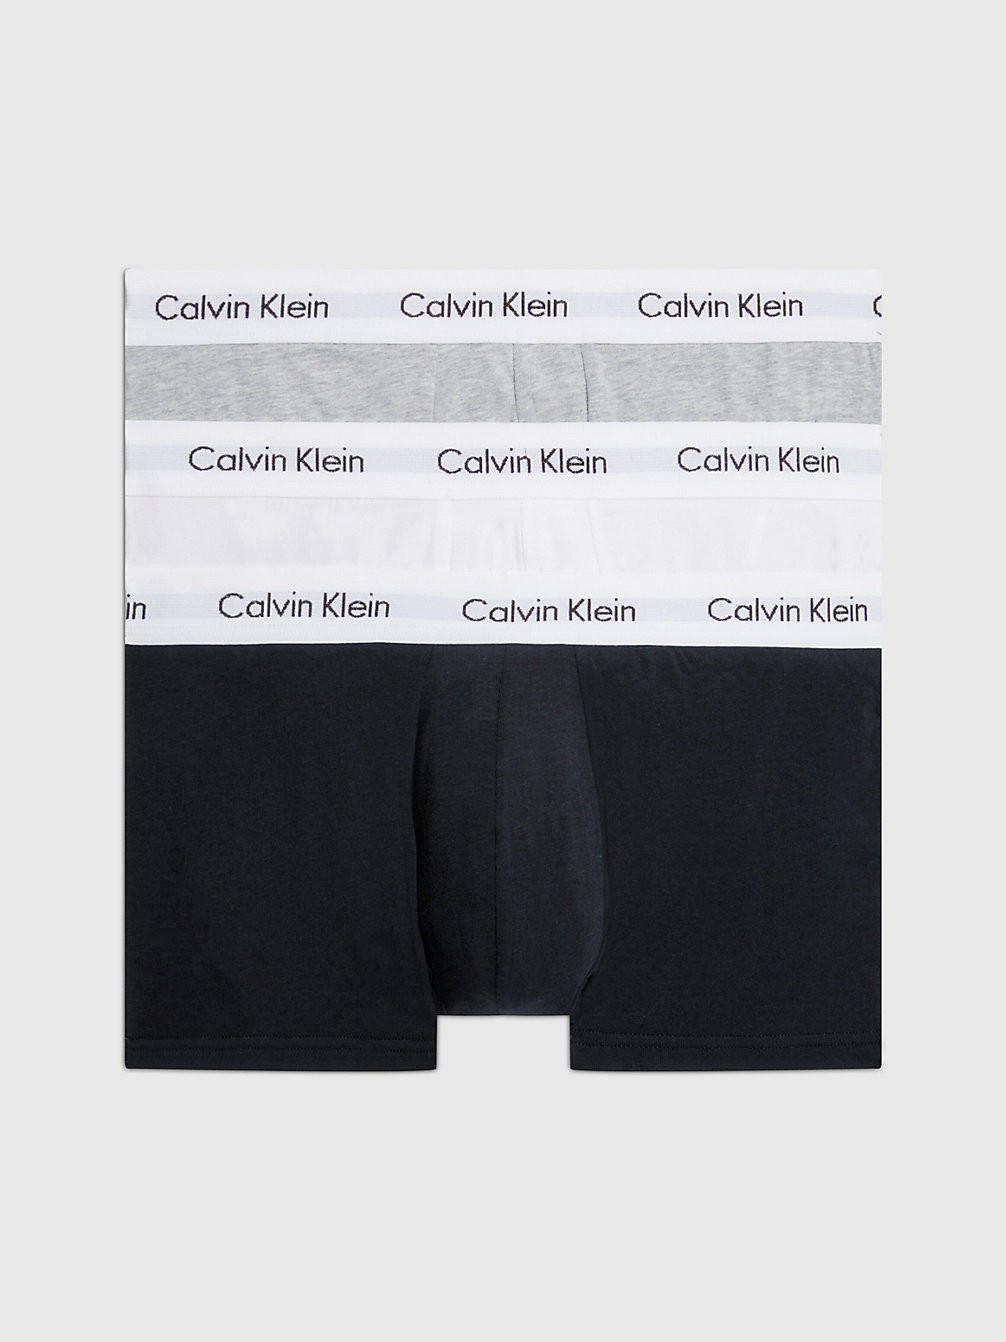 BLACK/WHITE/GREY HEATHER > Комплект боксеров низкой посадки 3 шт. - Cotton Stretch > undefined женщины - Calvin Klein